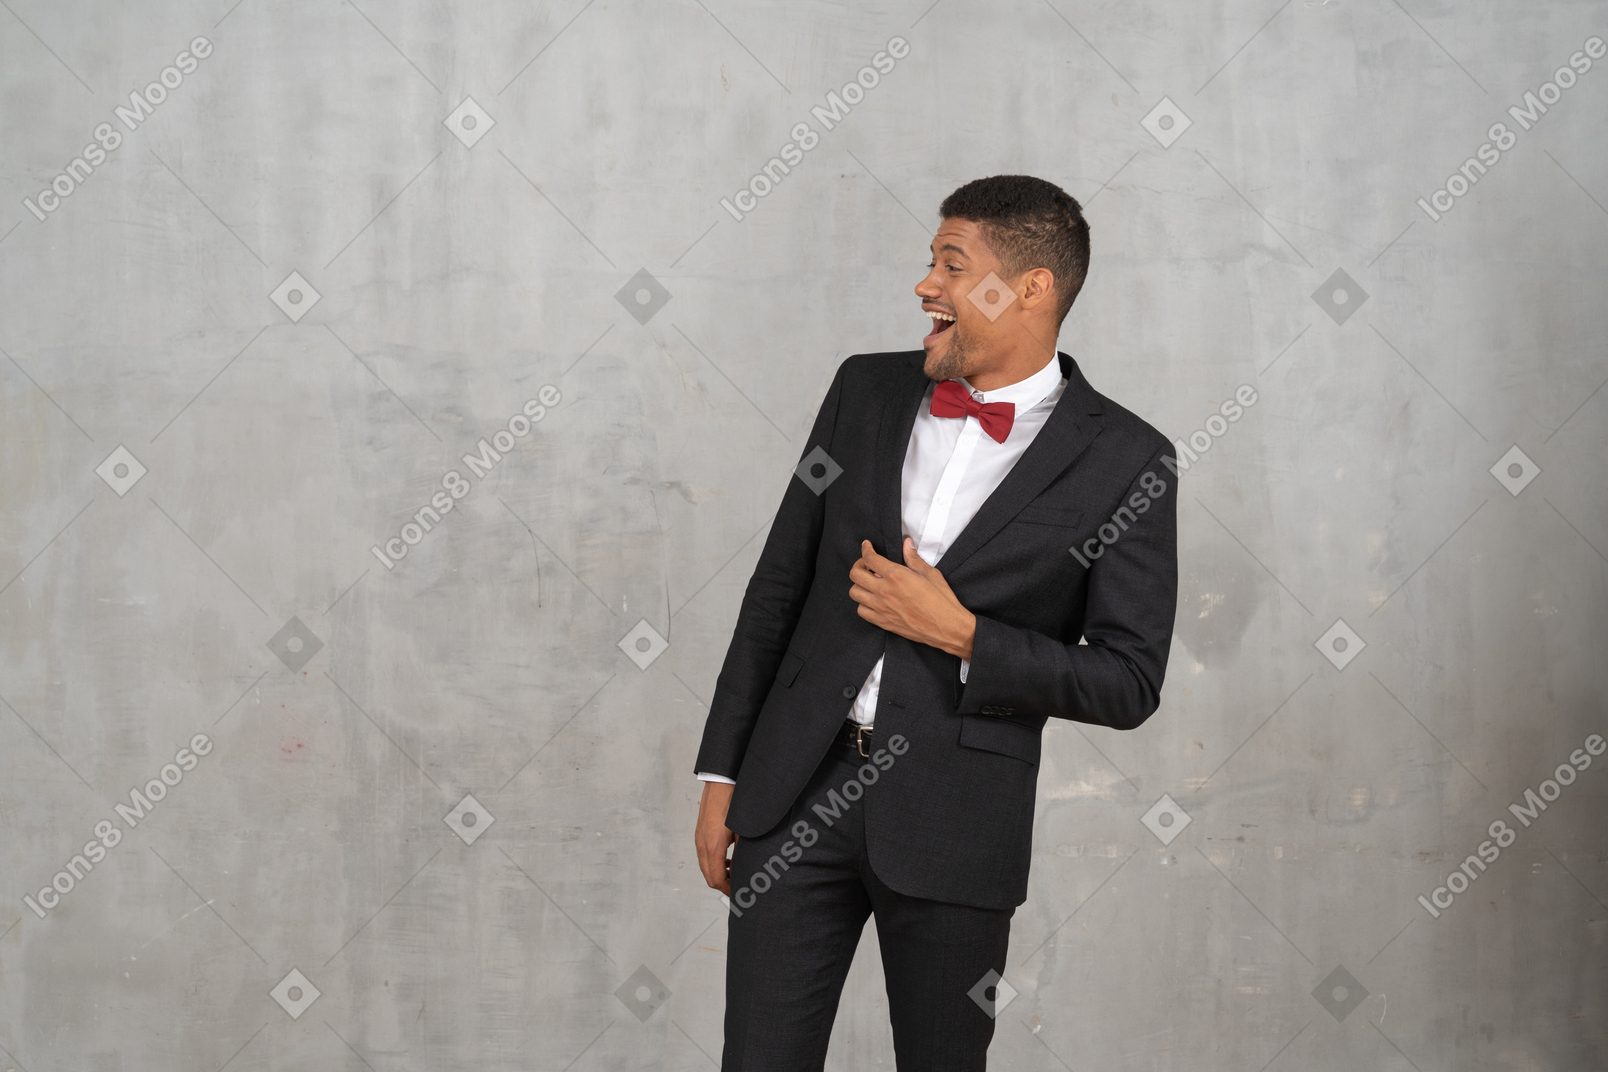 Hombre riendo con traje negro mirando a su derecha